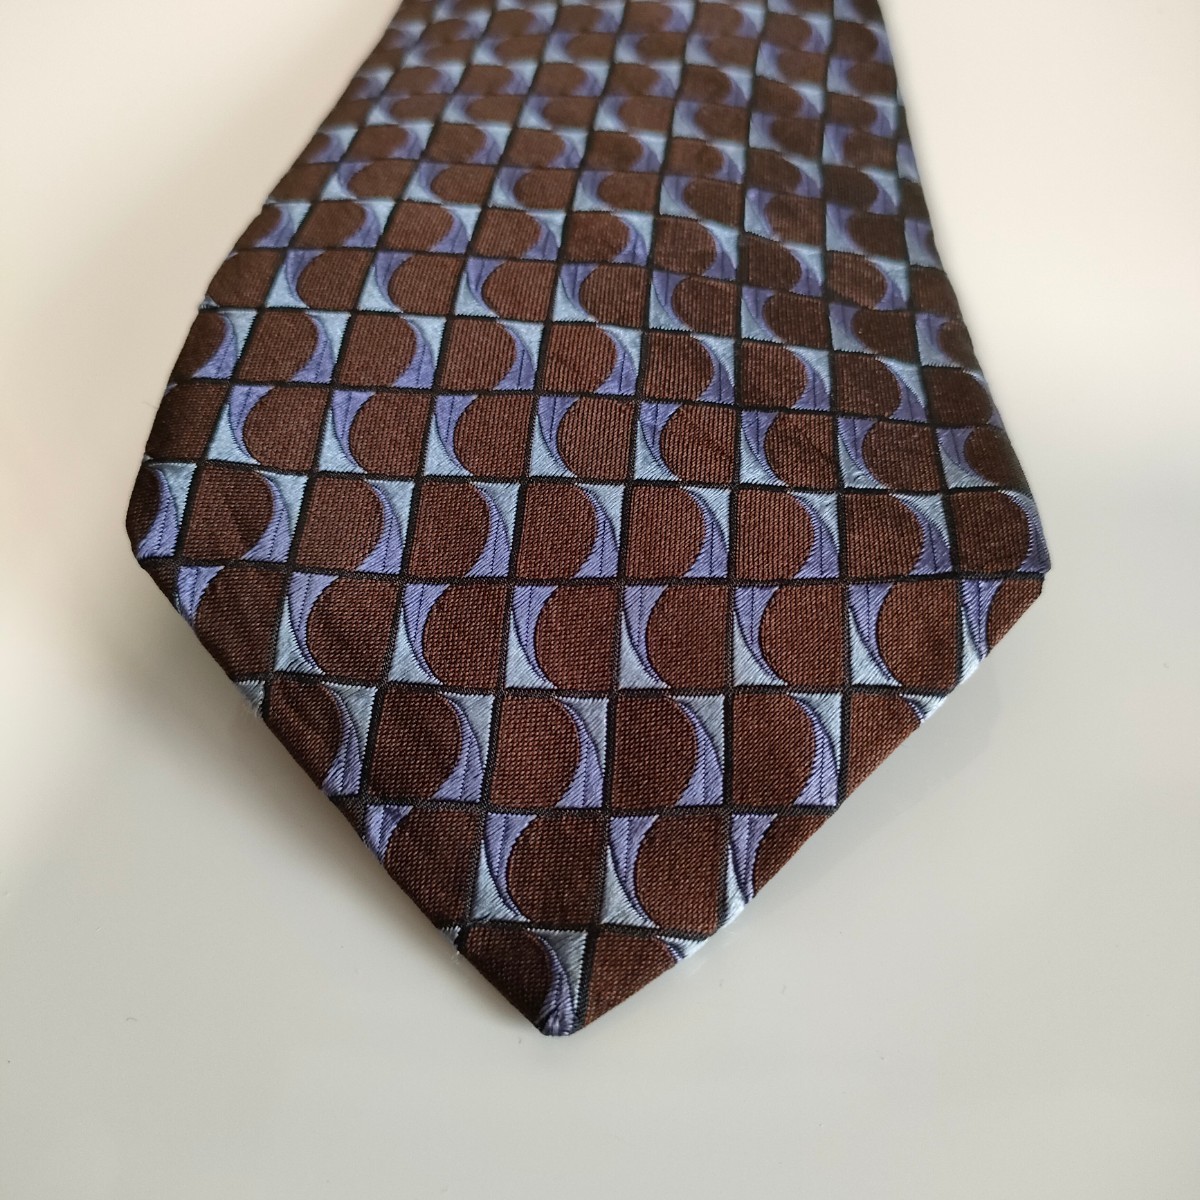  Trussardi (TRUSSARDI) necktie 1